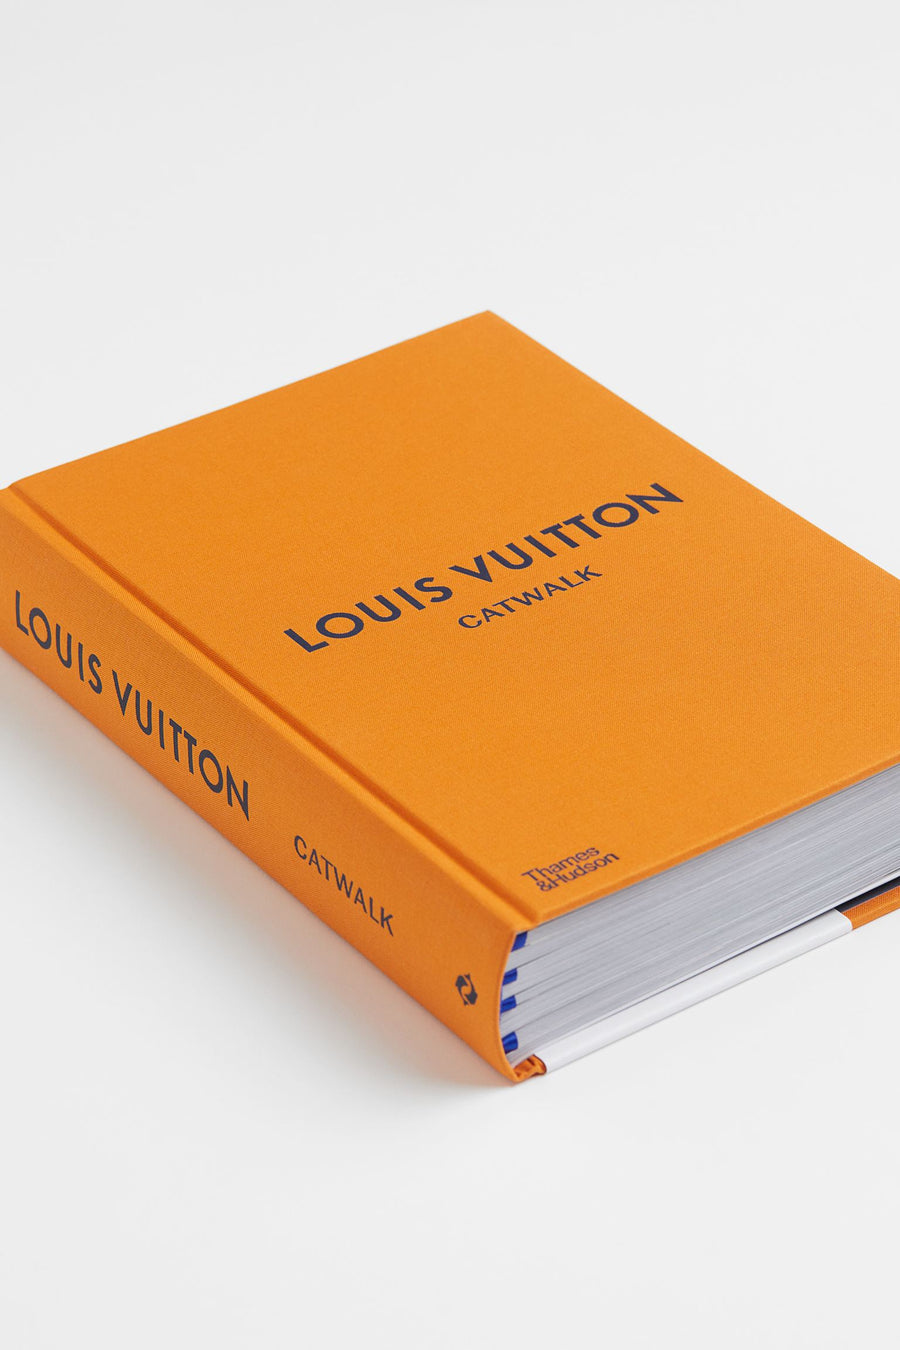 THAMES & HUDSON Louis Vuitton Catwalk fashion book